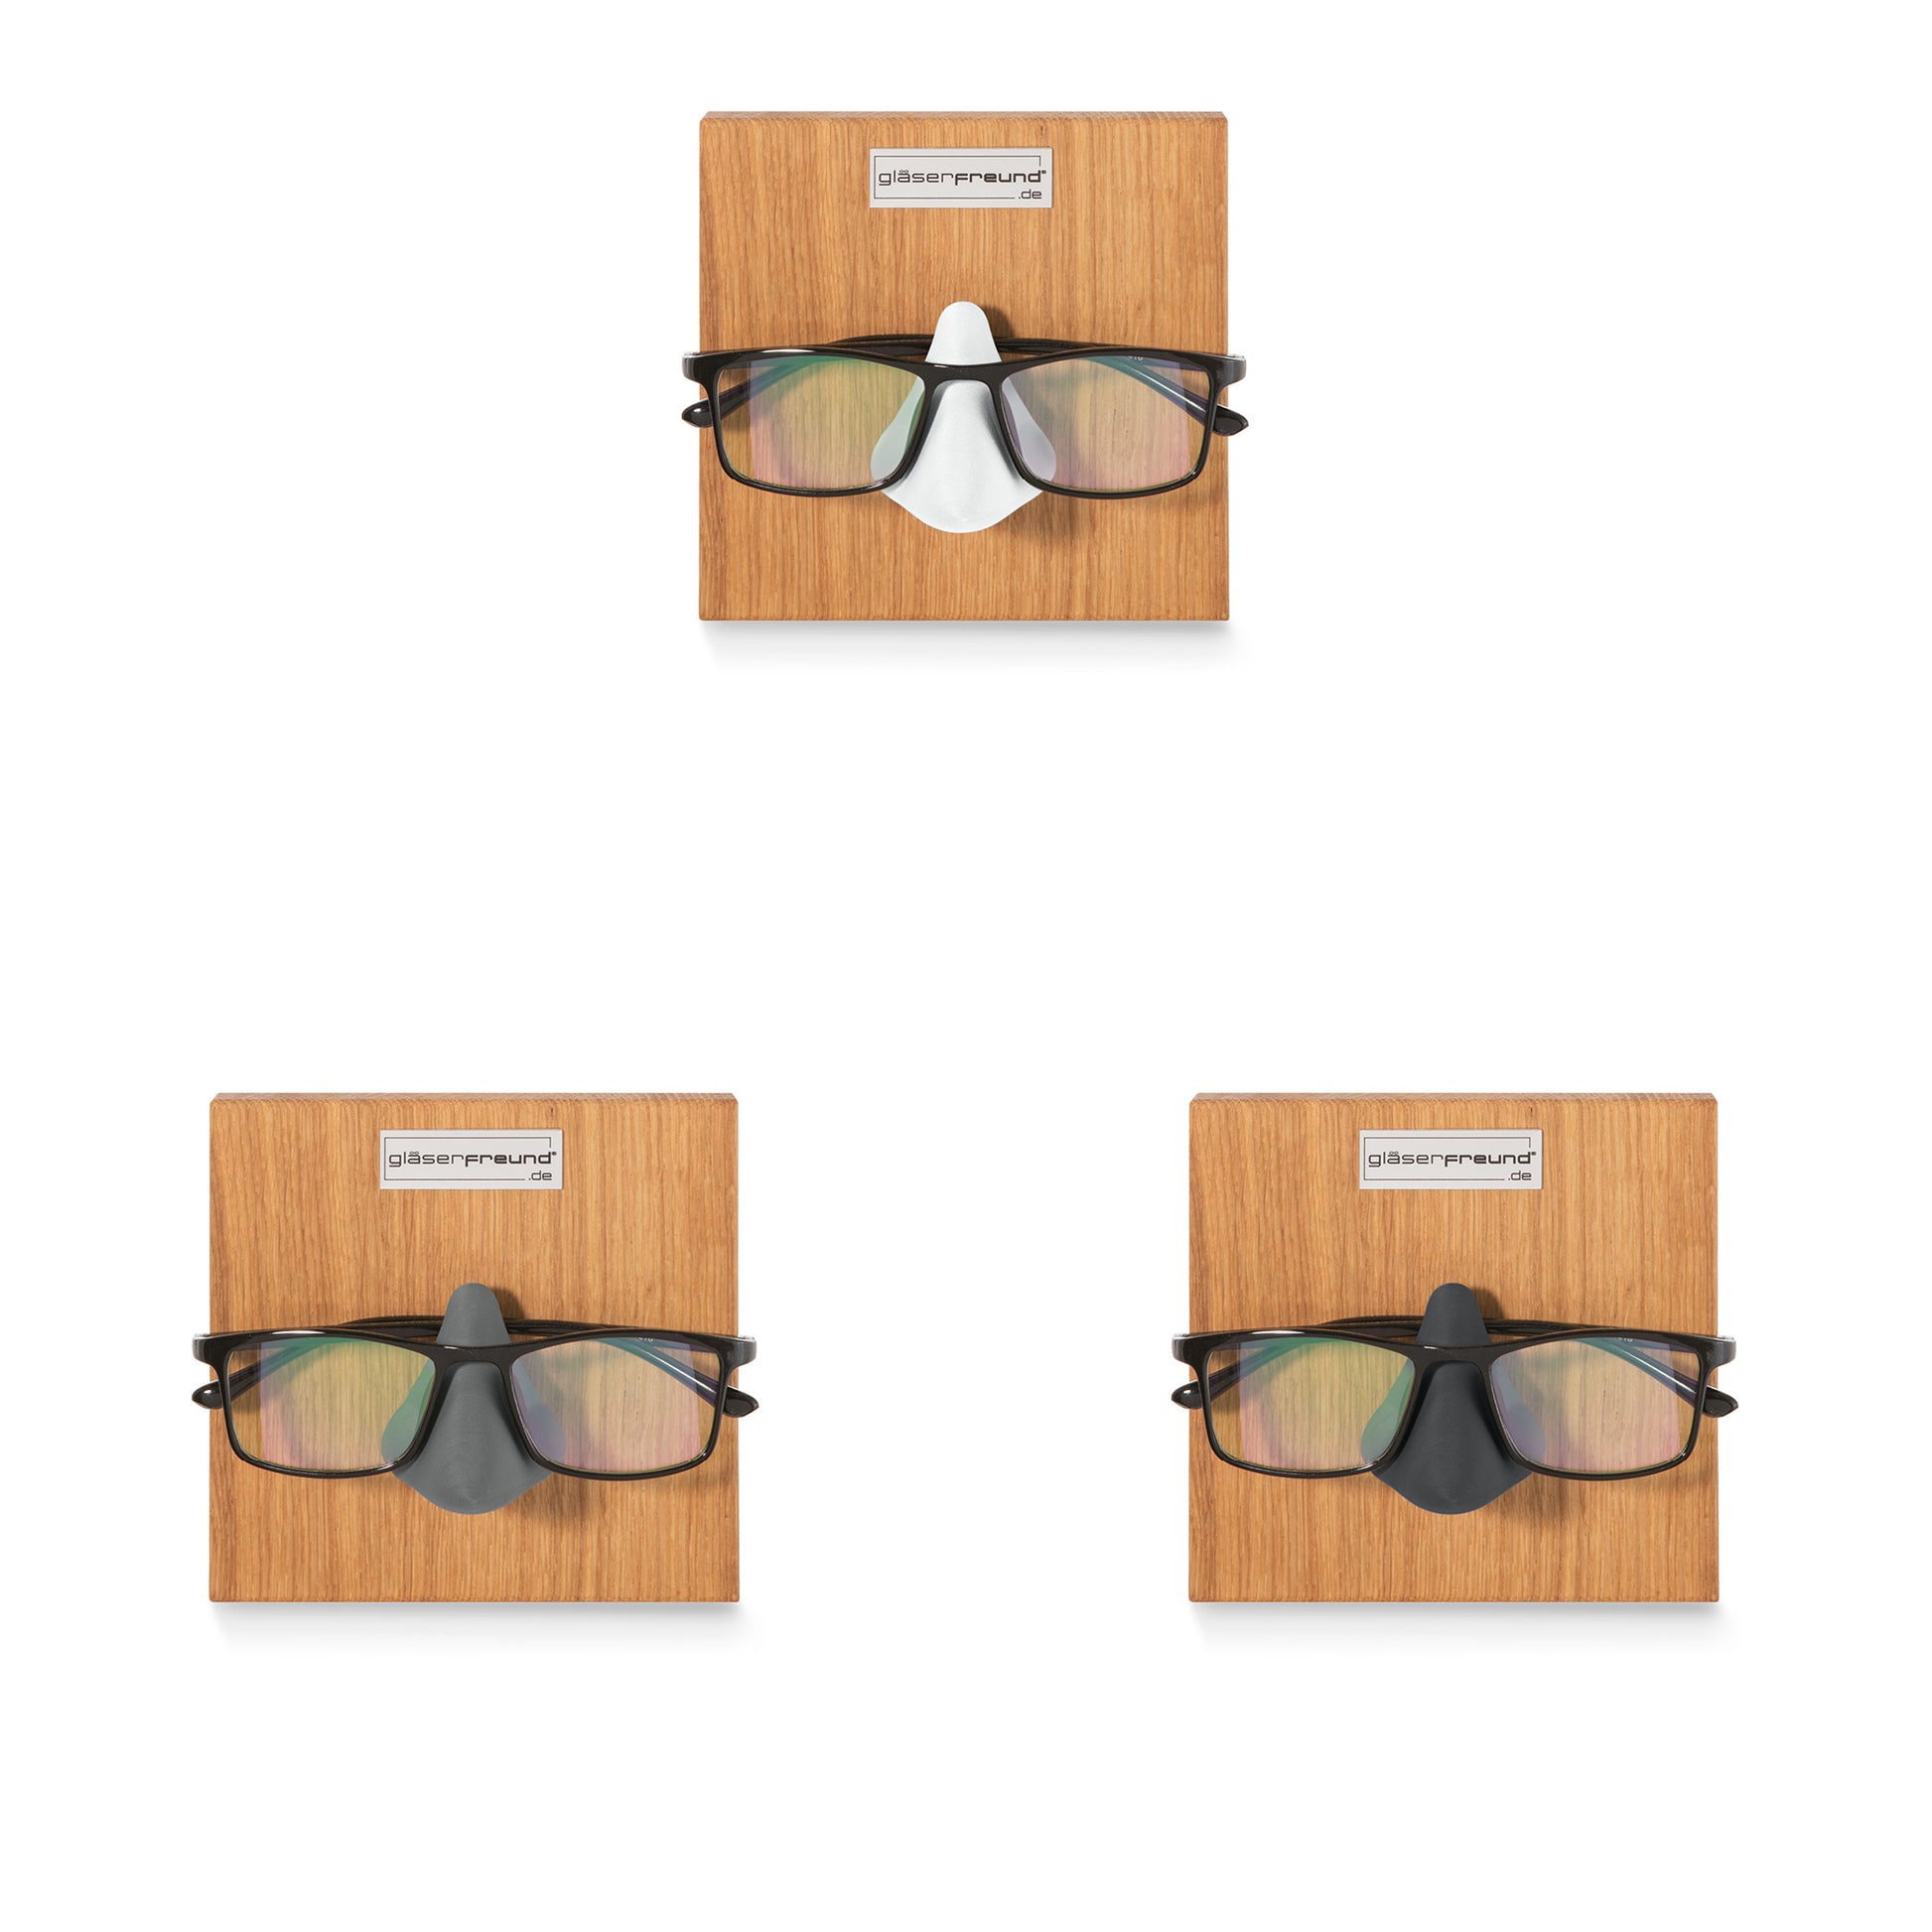 Gläserfreund Kessy-Q Brillenorganizer und Brillenhalter für die Wand -  Brillenaufbewahrung für mehrere Brillen, Brillenregal für mehr Ordnung :  : Küche, Haushalt & Wohnen